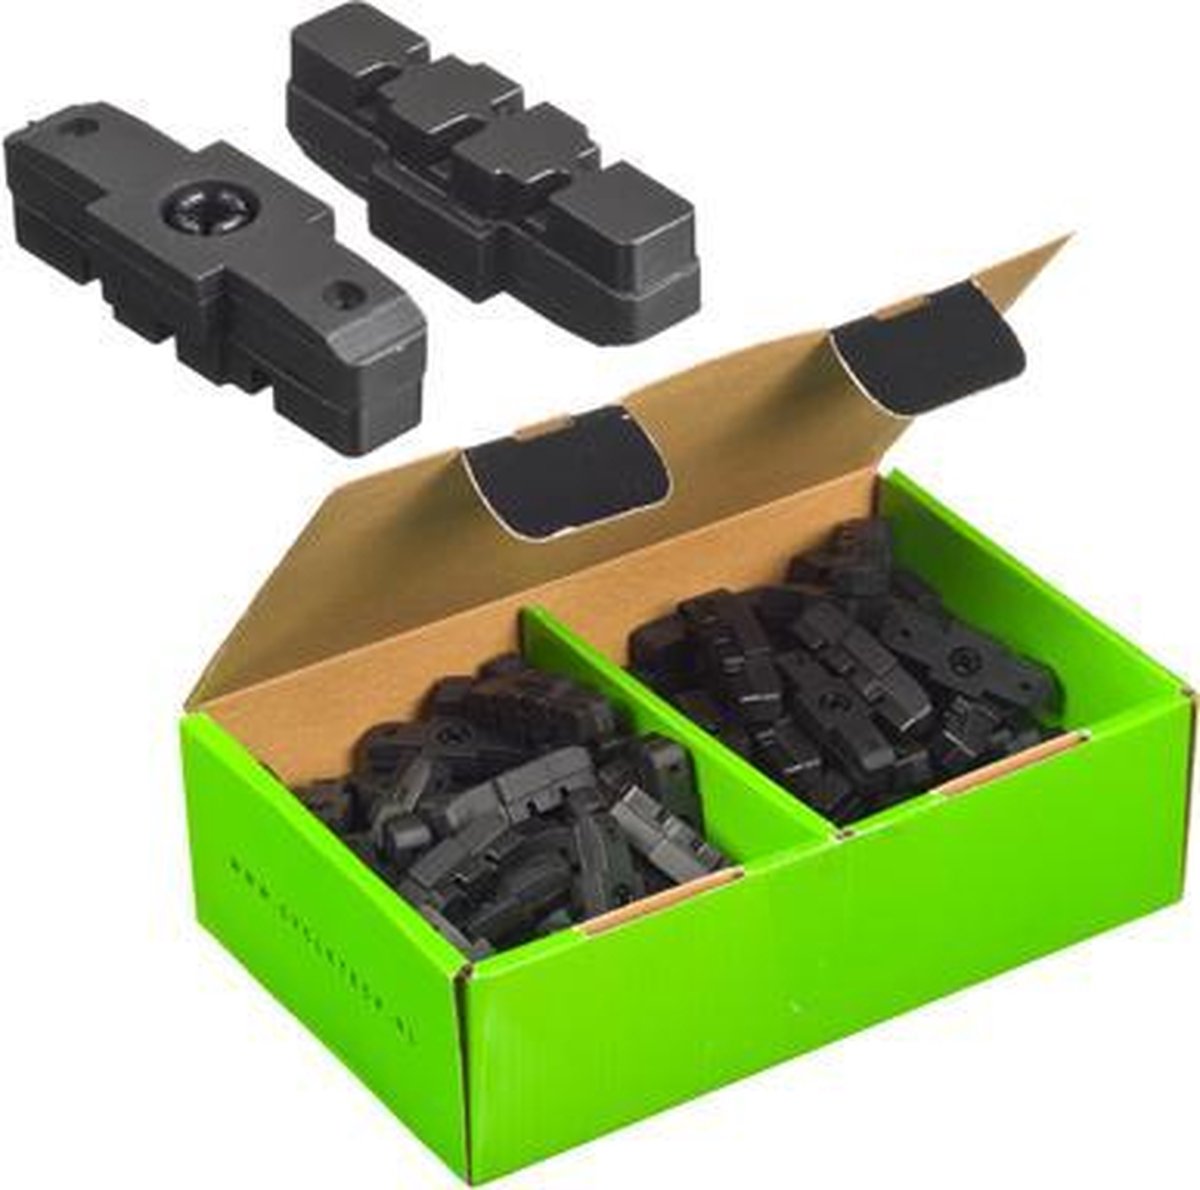 Magura FALKX remblokken compatible, 50 sets in doos. (werkplaatsverpakking)